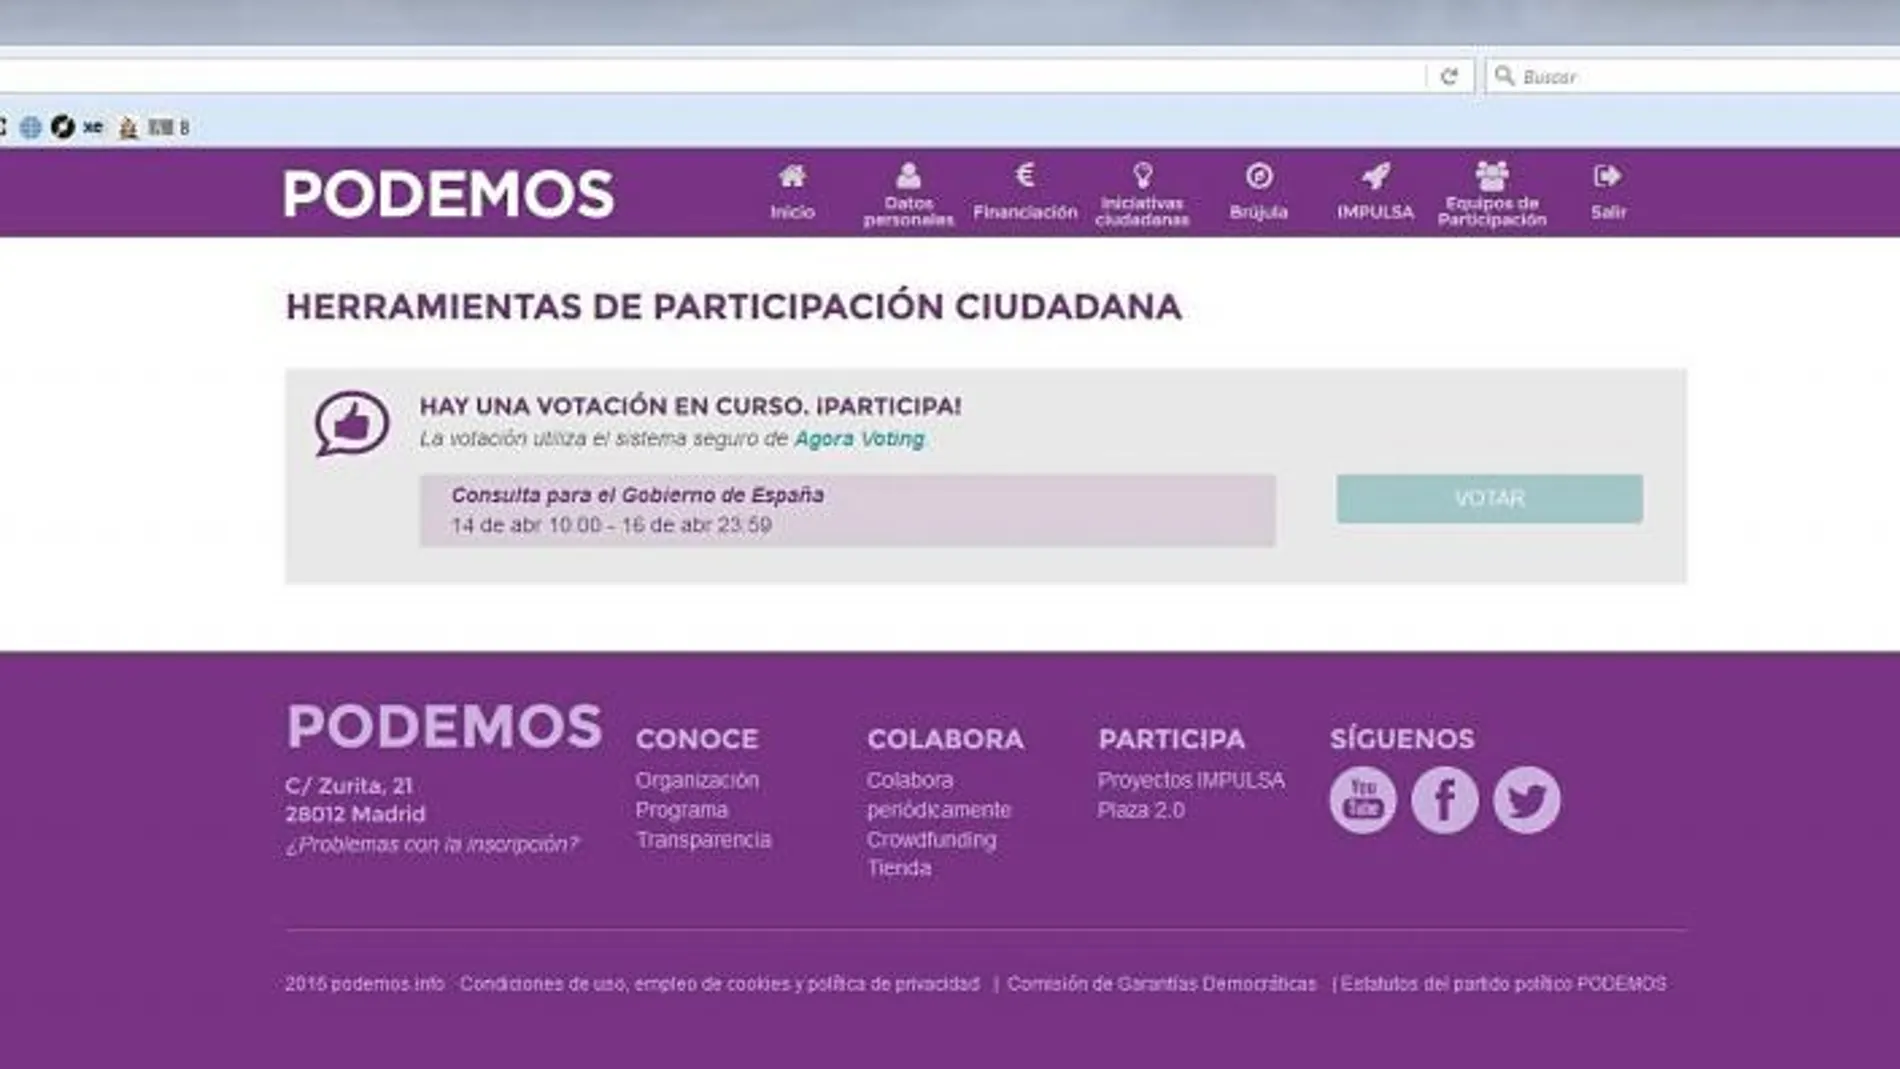 Casi un tercio de los inscritos en la consulta de Podemos han votado ya